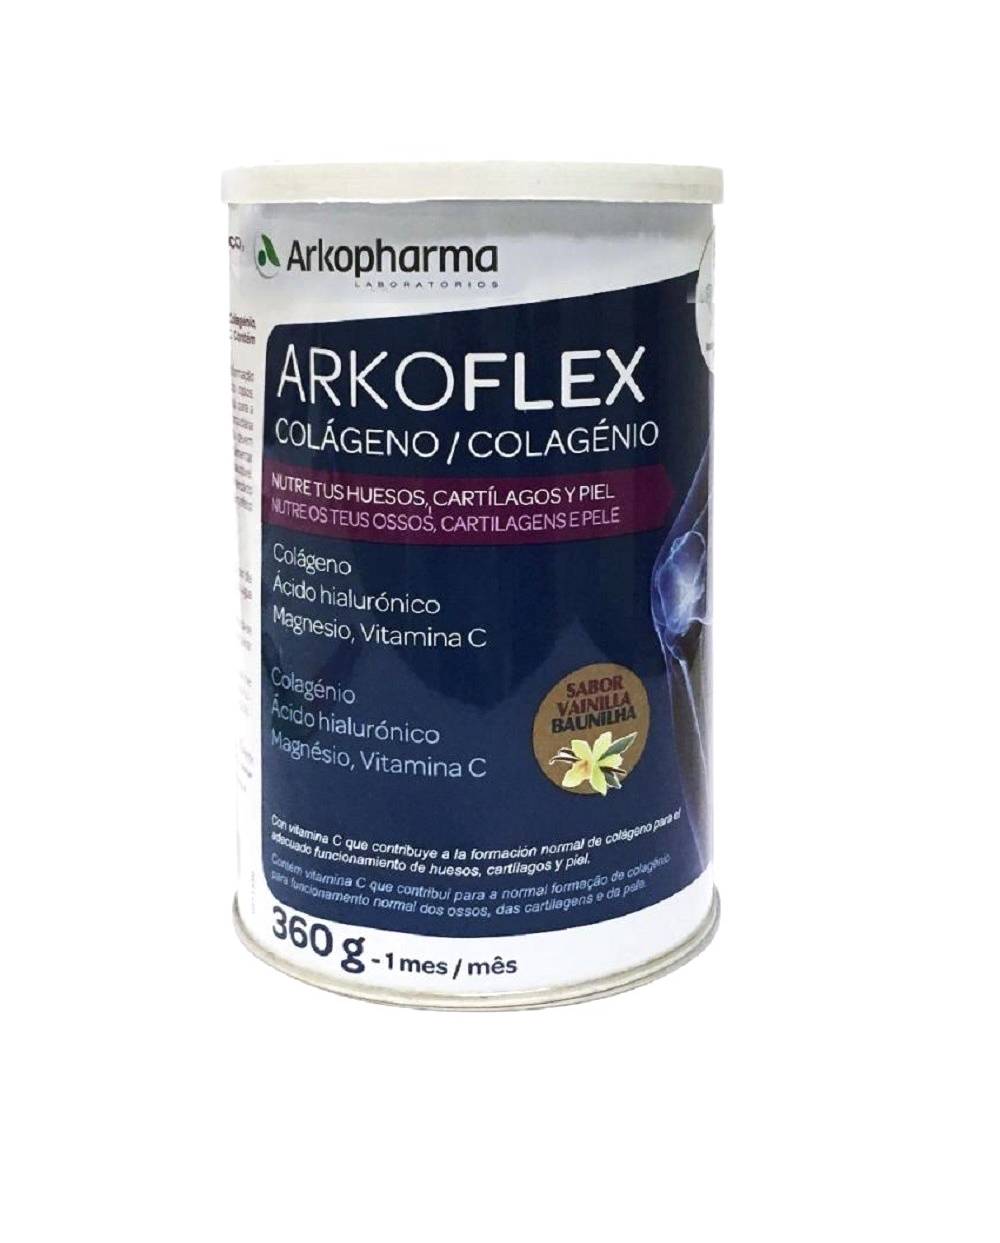 Arkoflex Colágeno Vainilla - 360 gramos - Arkopharma